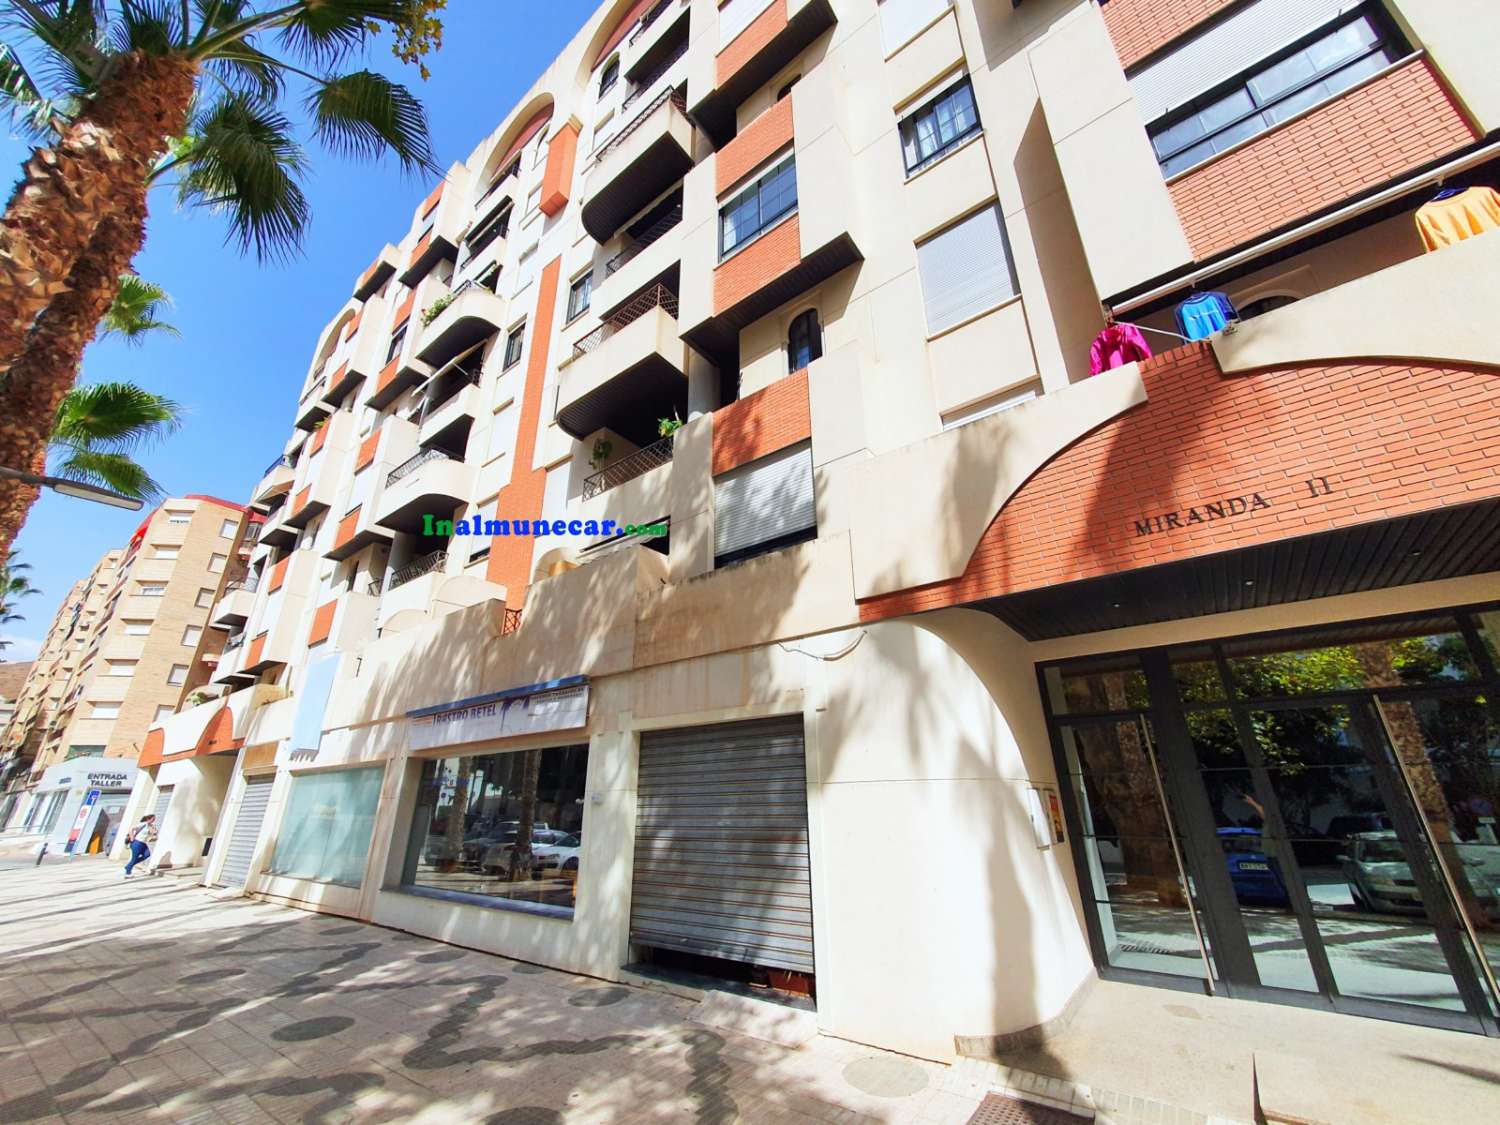 Lägenhet till salu i Almuñécar med parkeringsplats och förråd